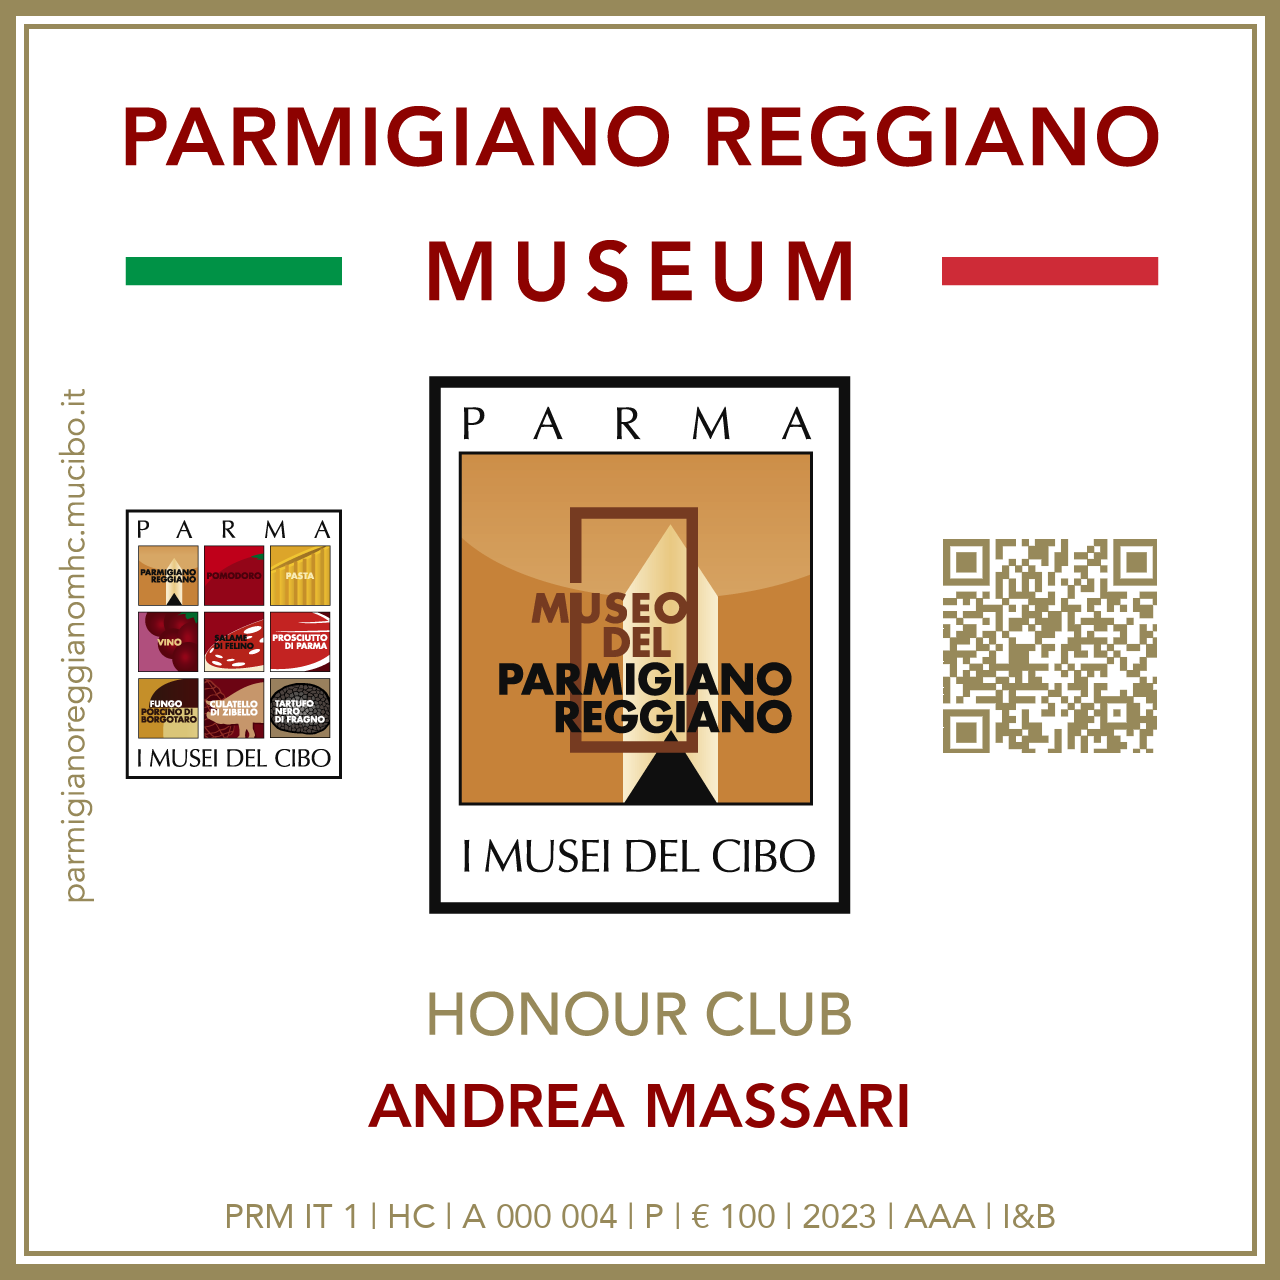 Parmigiano Reggiano Museum Honour Club - Token Id A 000 004 - ANDREA MASSARI